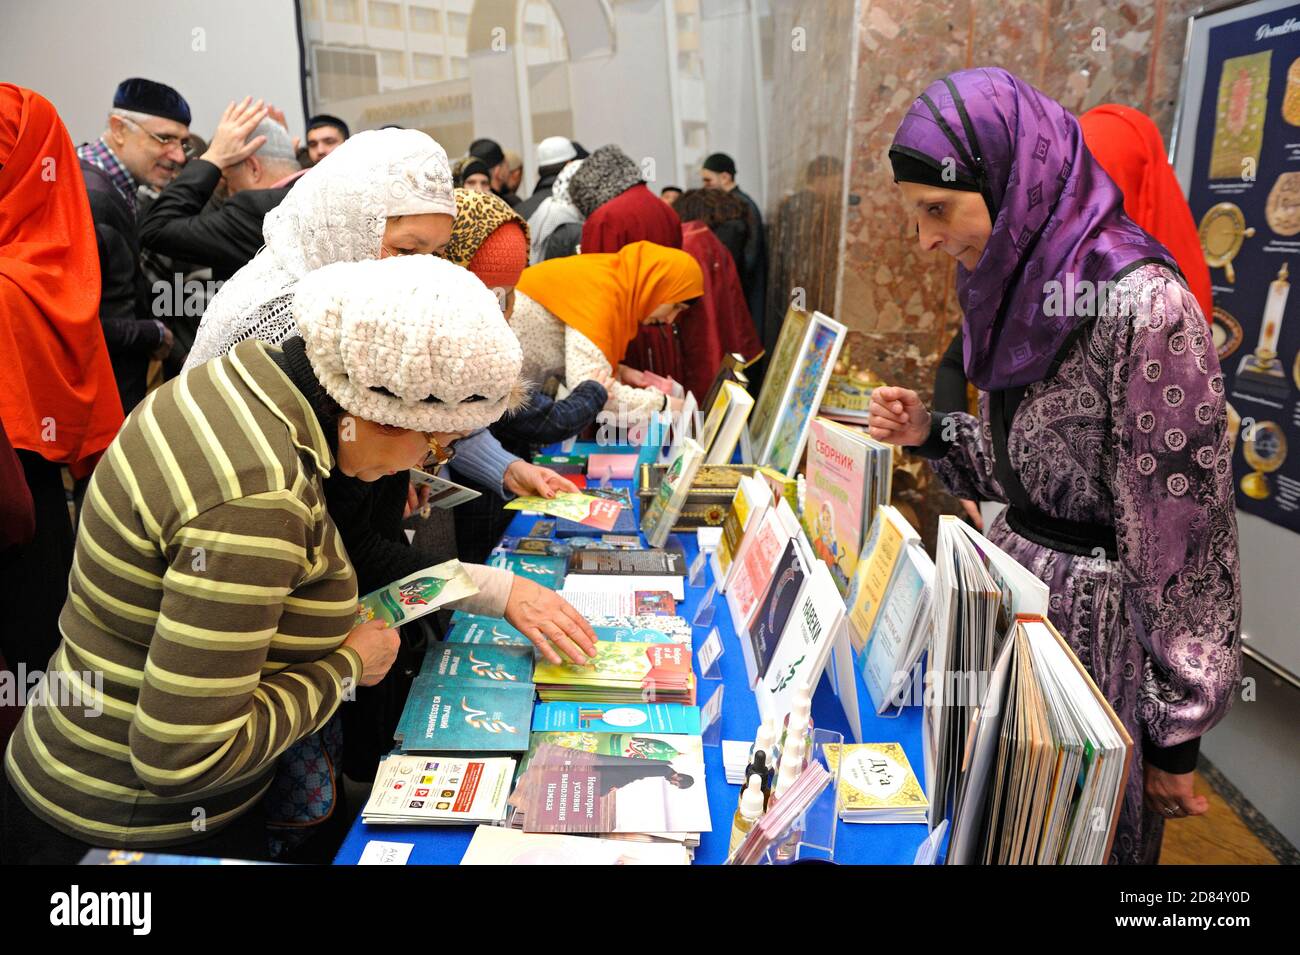 Female muslims buying religious book during celebrating Islamic holiday Mawlid Stock Photo